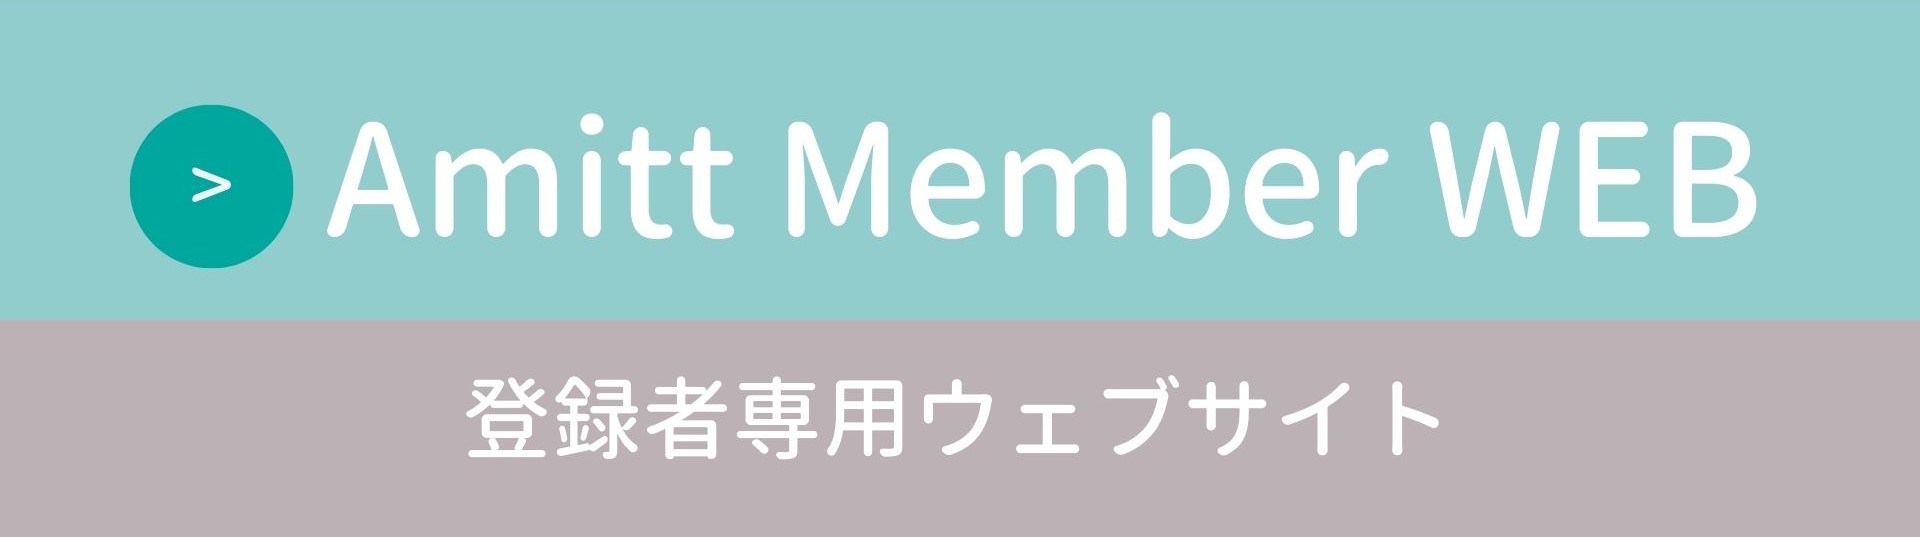 Amitt Member Web